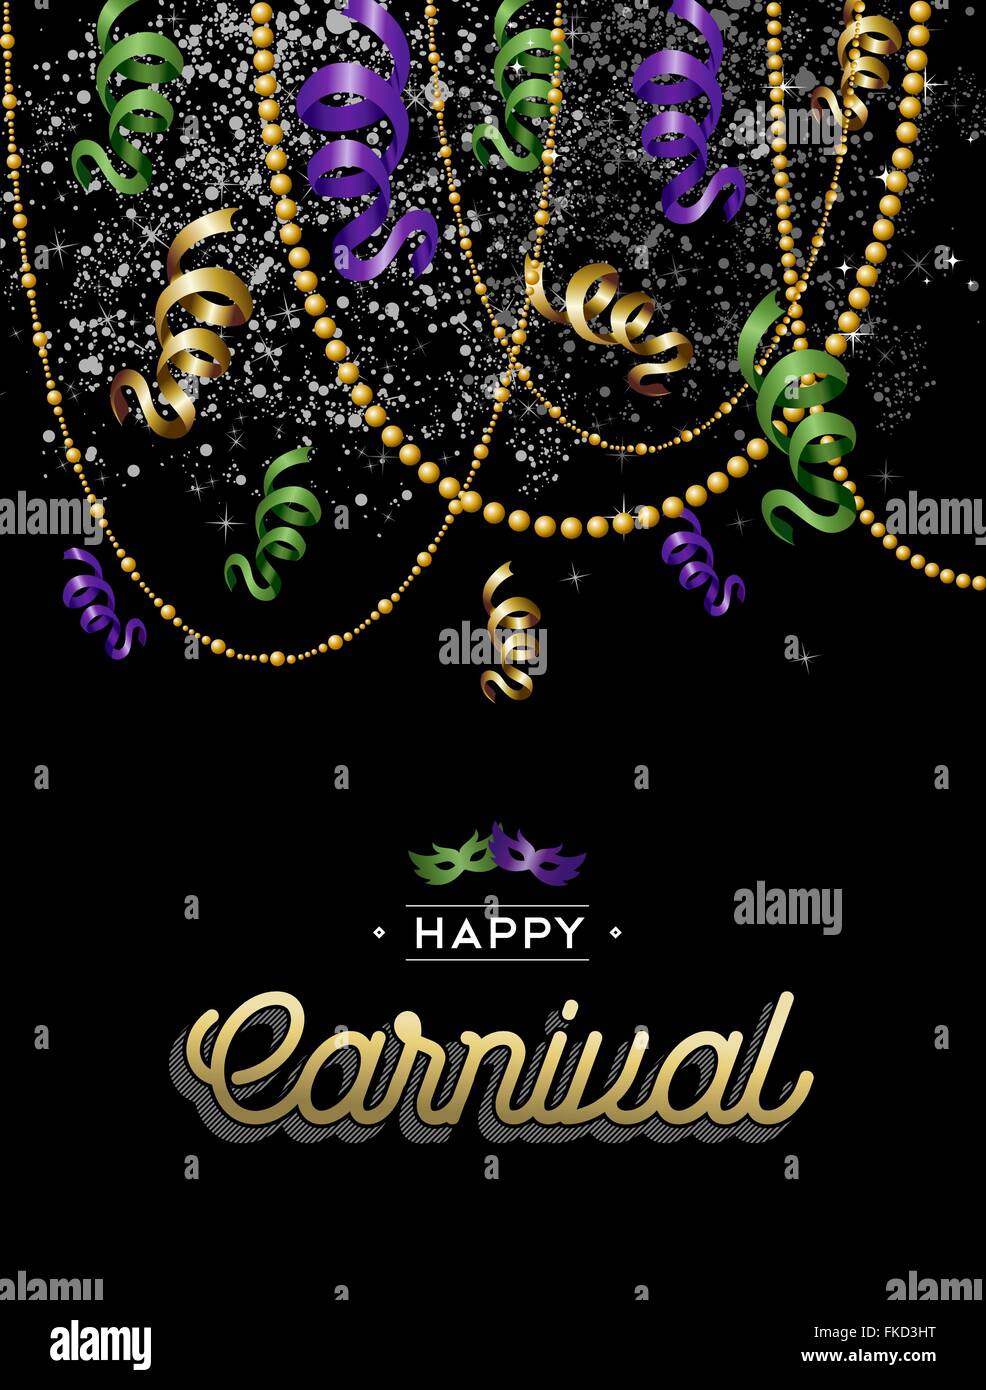 Carnaval heureux partie de la décoration de la conception, de l'or, les couleurs violet et vert avec étiquette de texte. Vecteur EPS10. Illustration de Vecteur